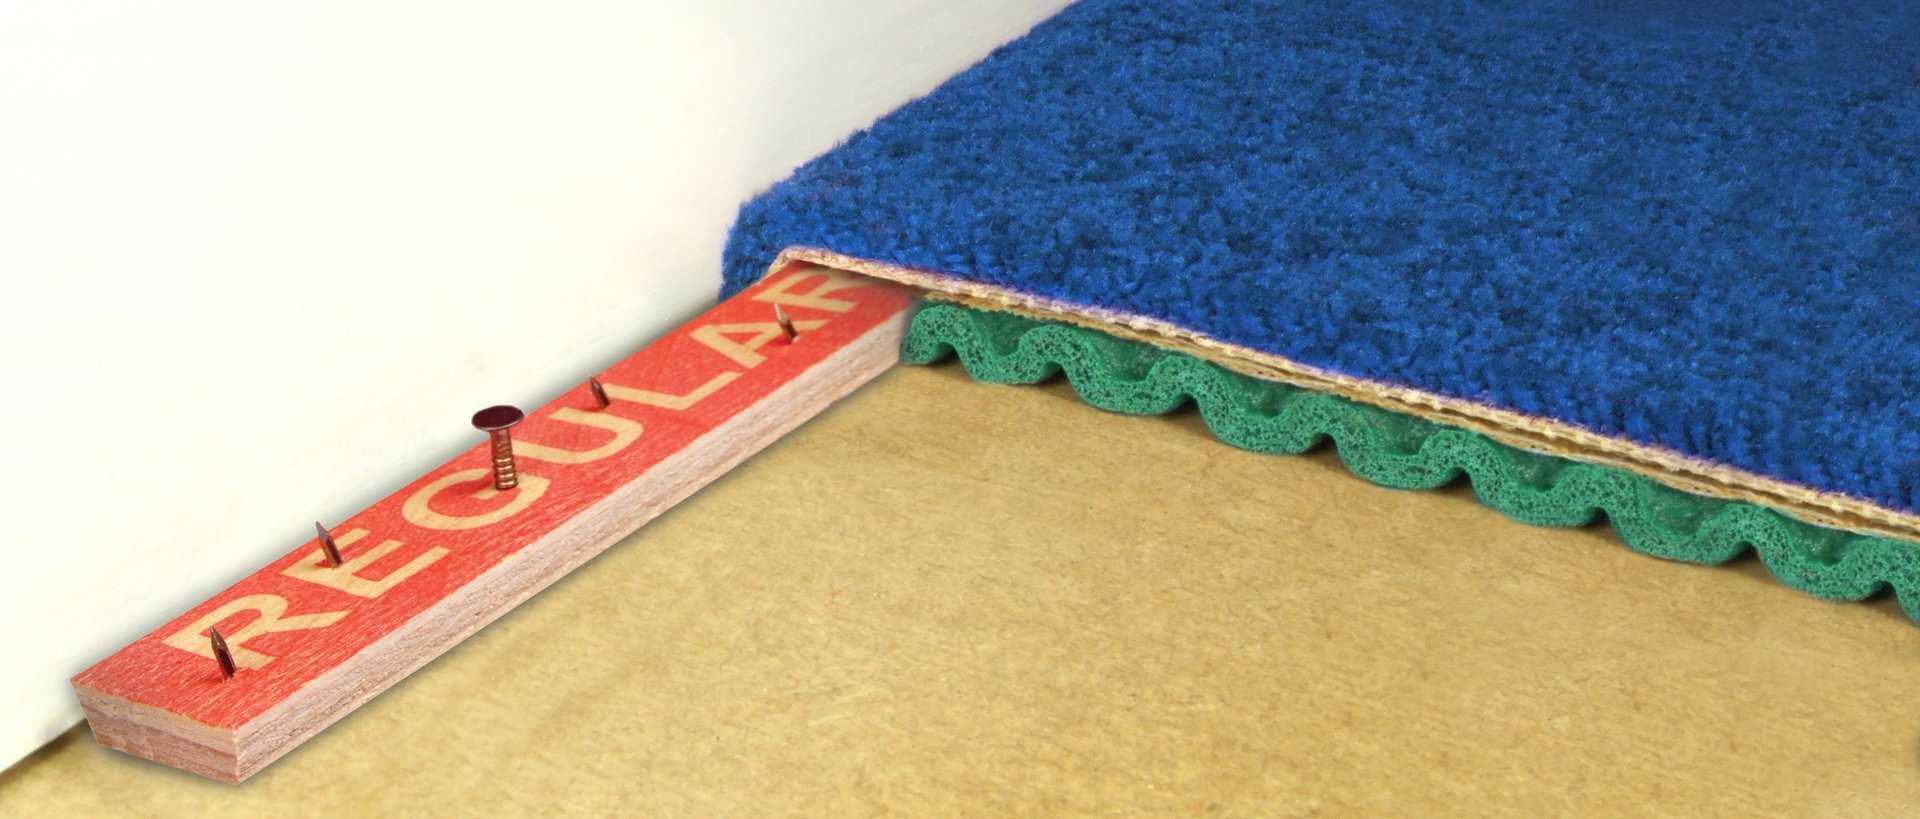 Укладка и монтаж ковролина: как правильно стелить, на ковролин, на деревянный и бетонный пол, на лестницу, своими руками, фото и видео